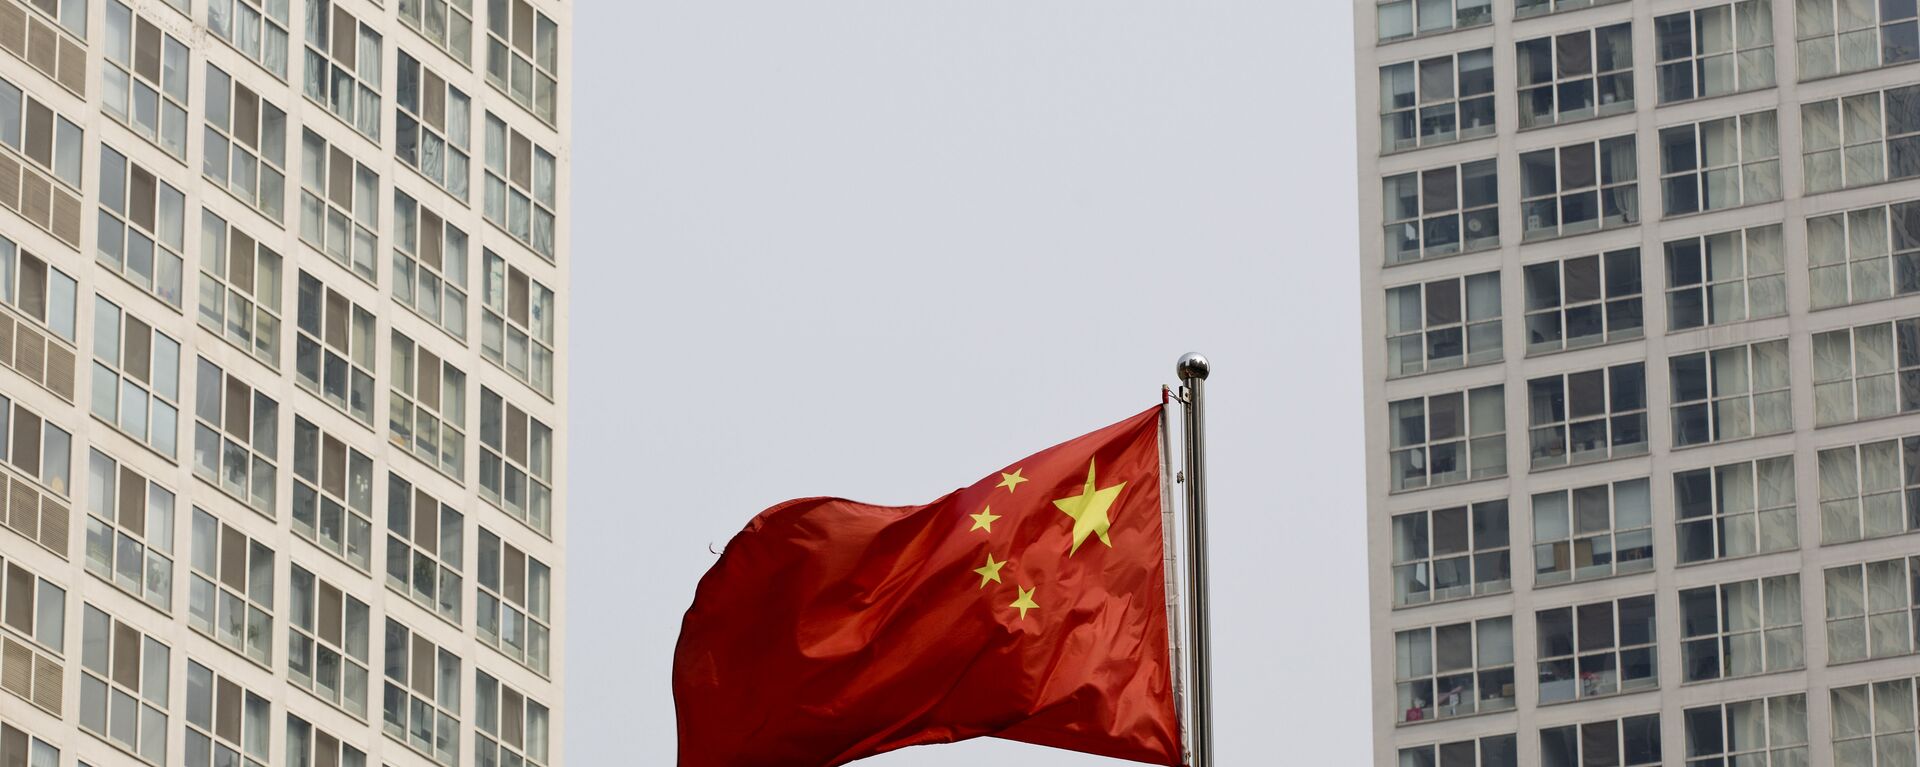 Застава Кине вијори се на ветру између вишеспратница у Пекингу - Sputnik Србија, 1920, 28.10.2021